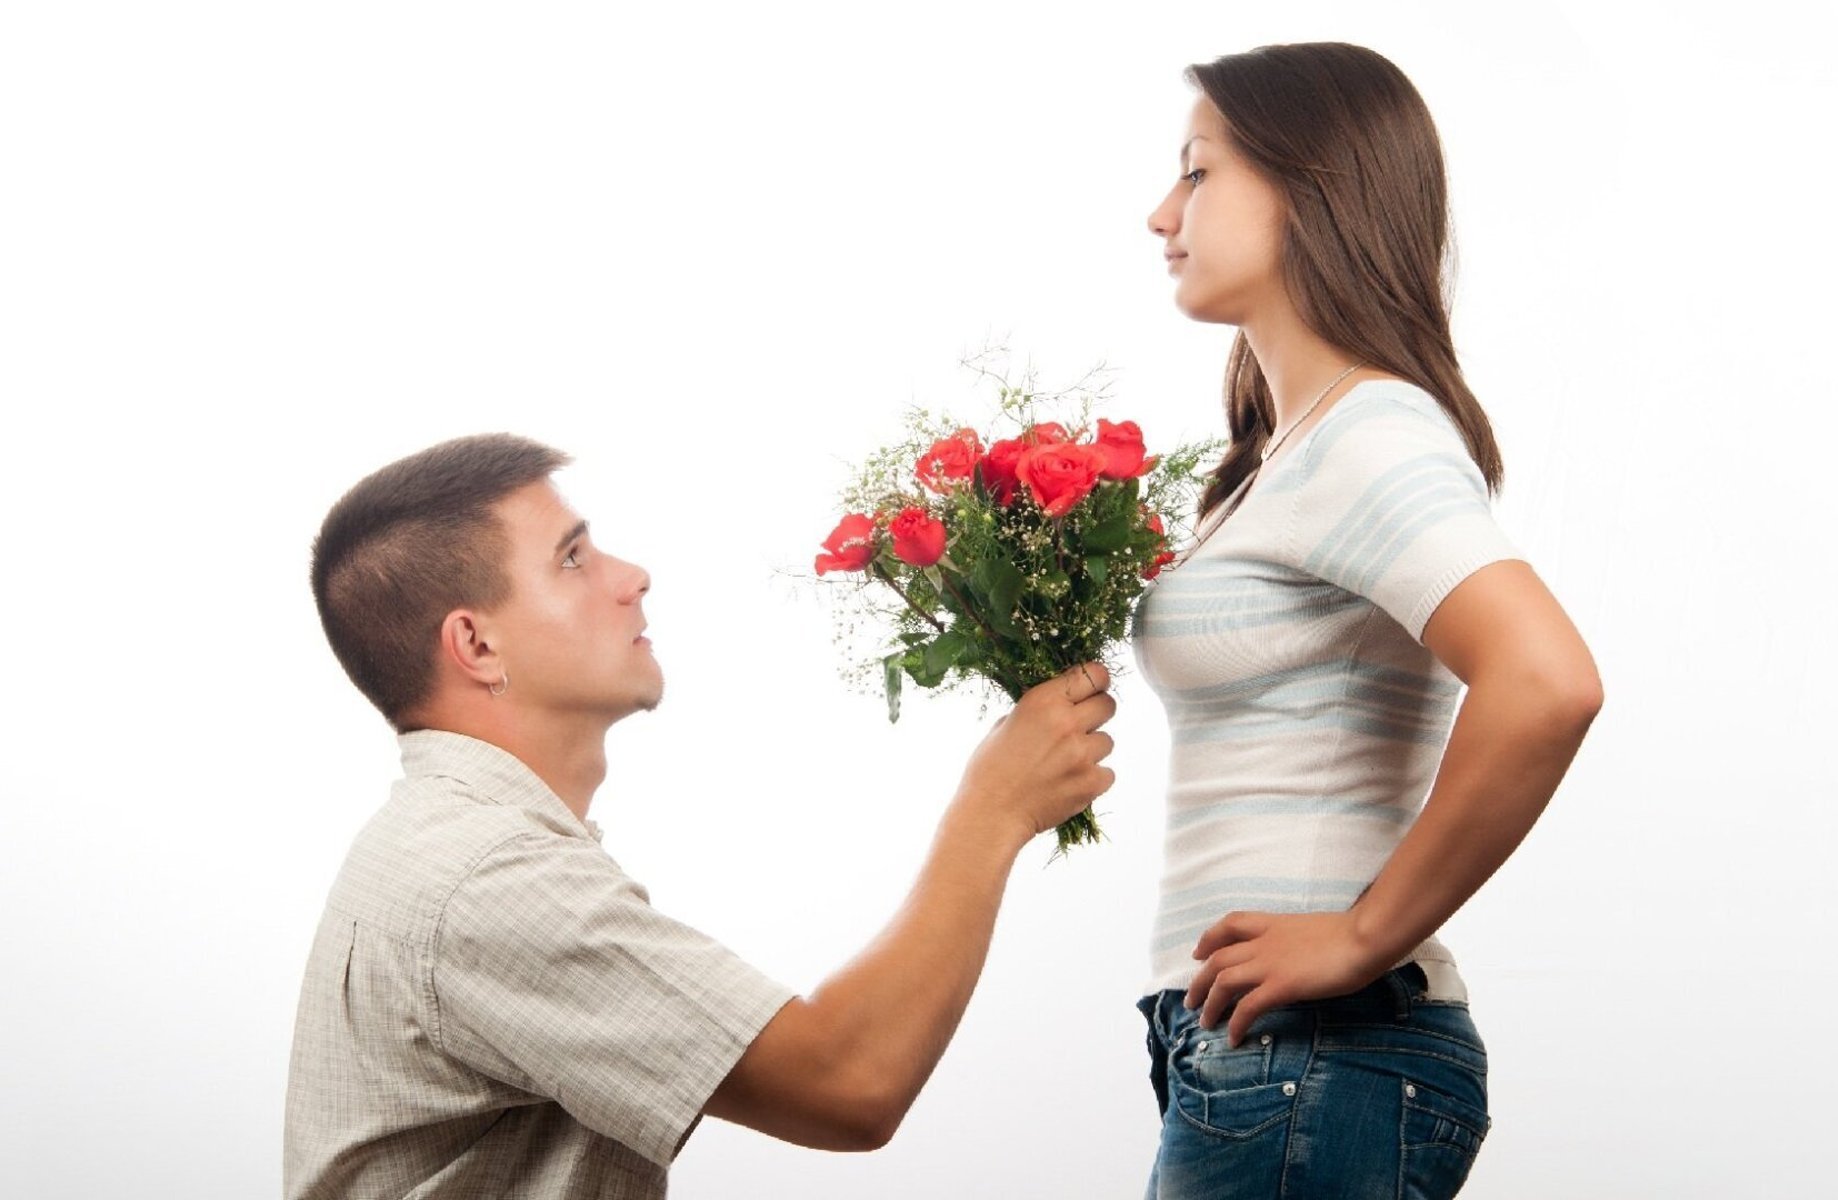 Как подбодрить девушку. Парень даритдеаушке цветы. Парень дарит девушке цветы. Девушке дарят цветы. Мужчина дарит цветы женщине.